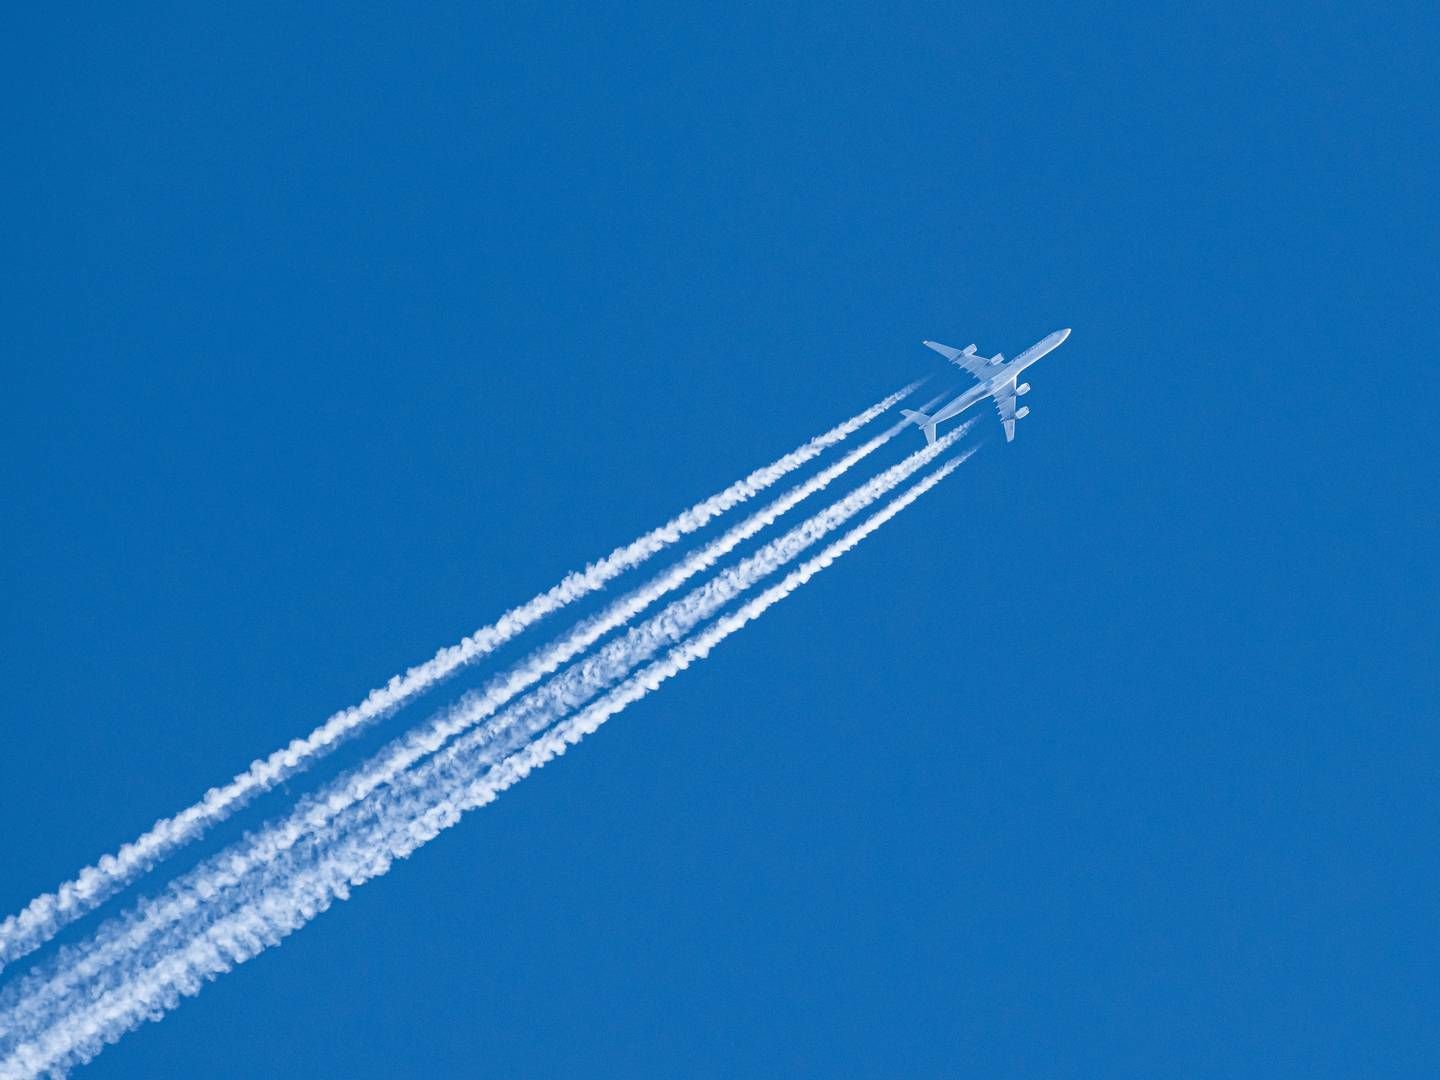 Op til 54 pct. af kondensstriberne fra fly kan ifølge et forsøg reduceres ved at flyve lavere. | Foto: Silas Stein/AP/Ritzau Scanpix